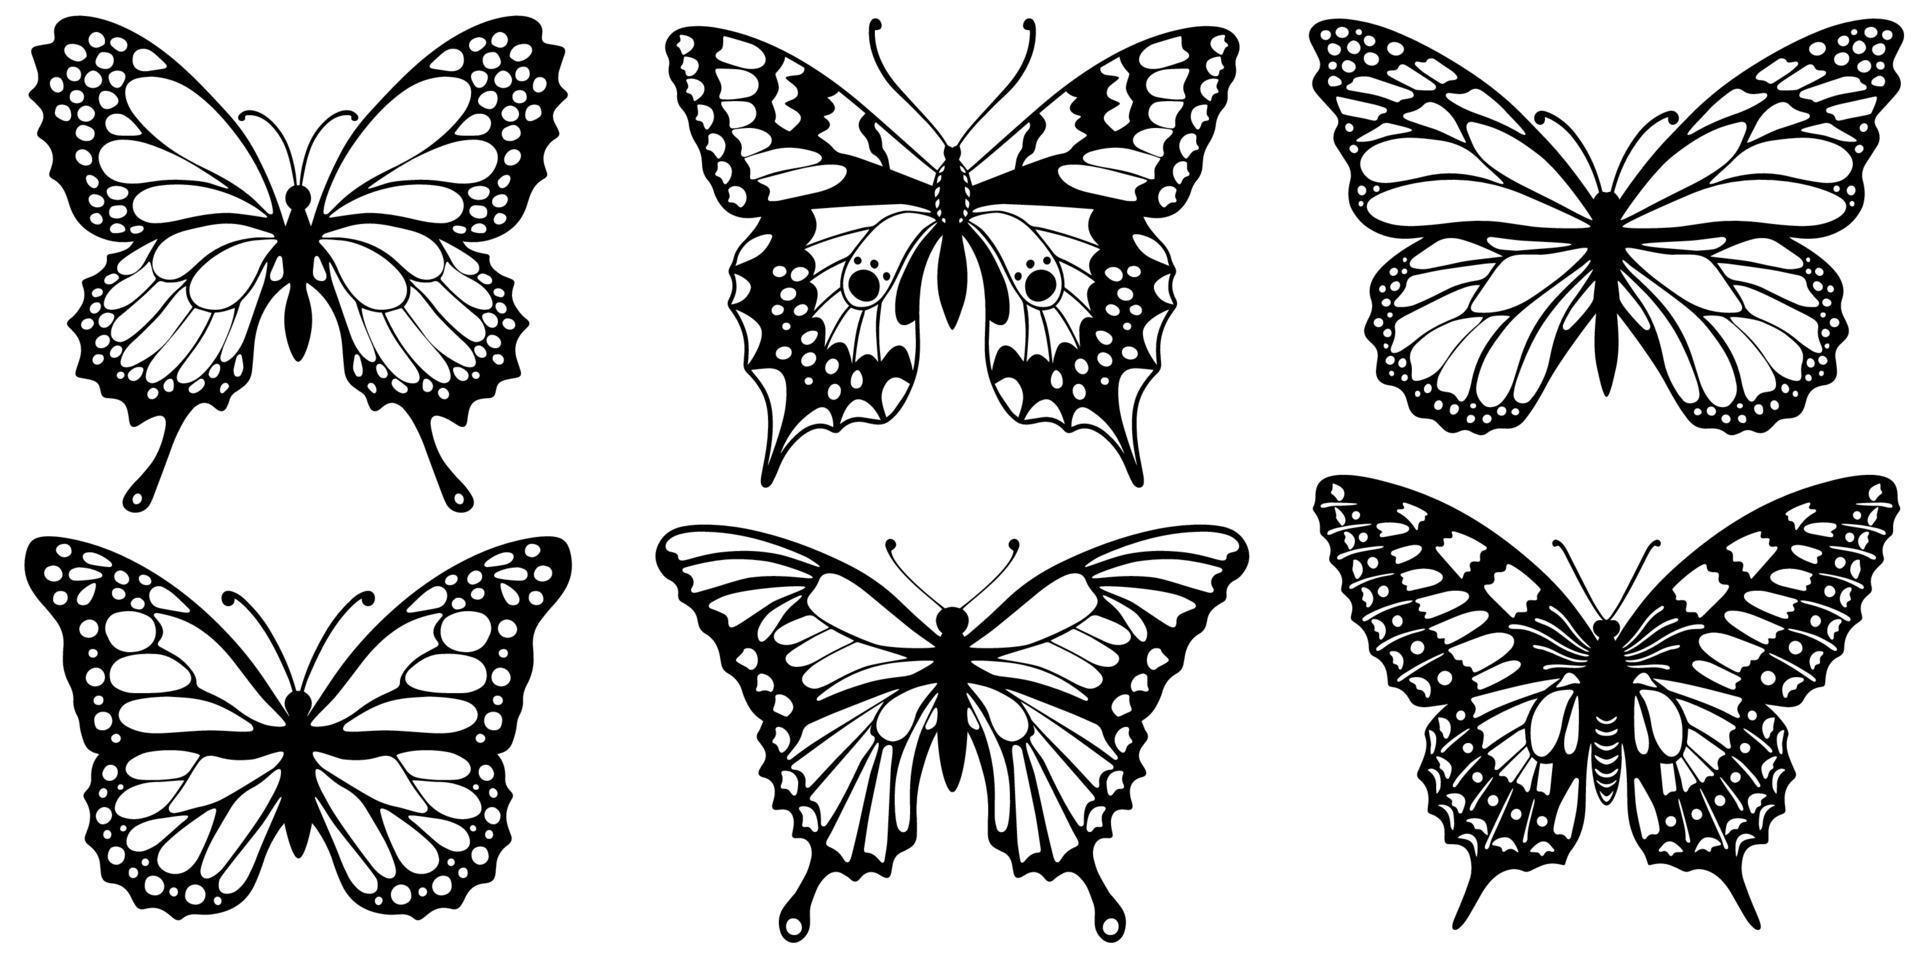 Schwarze Silhouetten von Schmetterlingen auf weißem Hintergrund zeichnen vektor